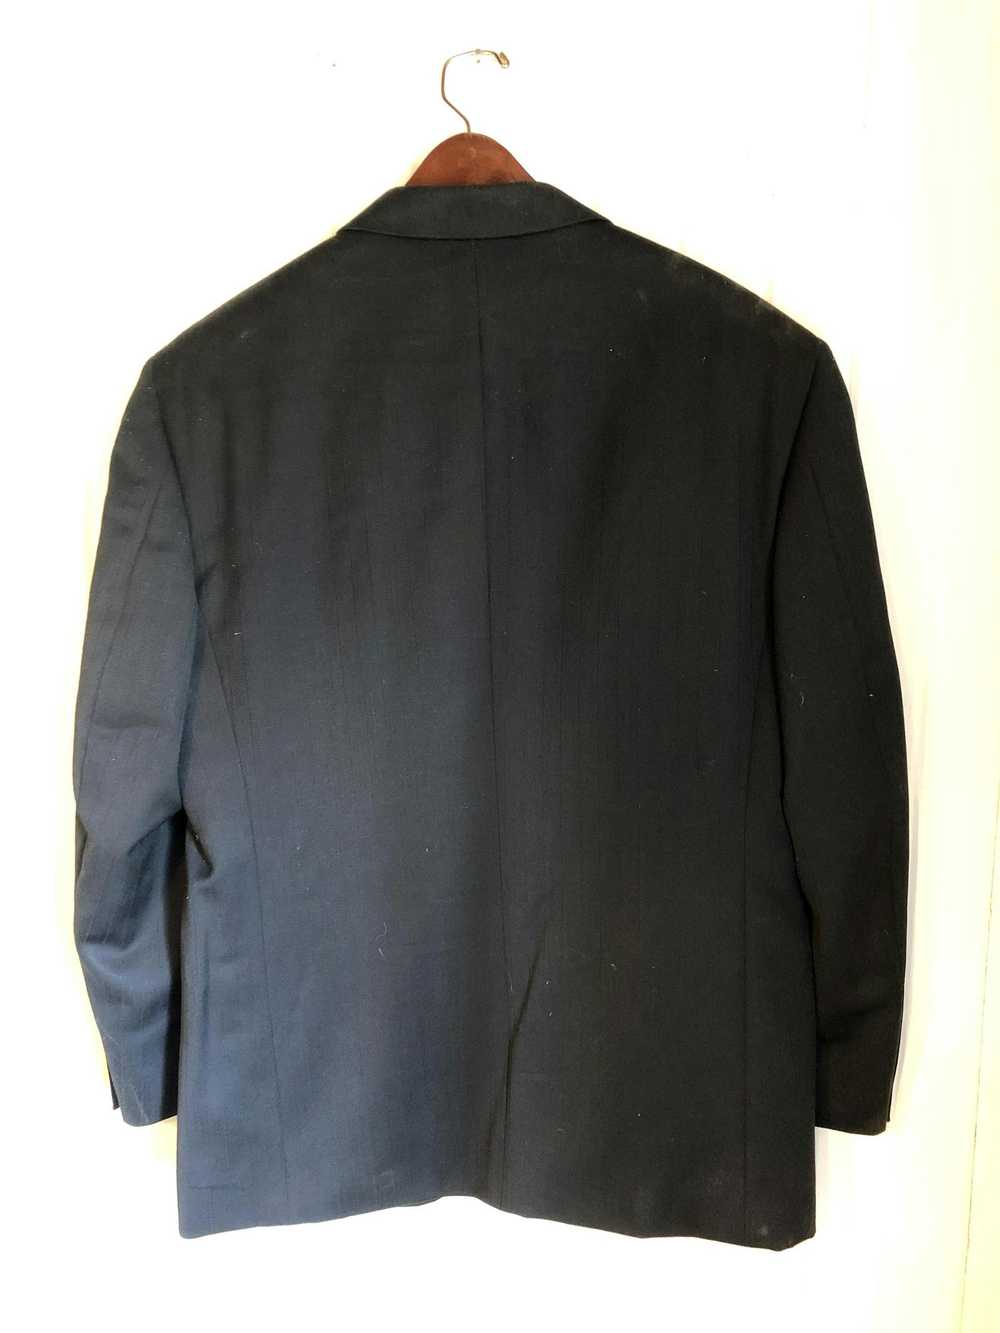 Jones New York Suit Jacket - image 7